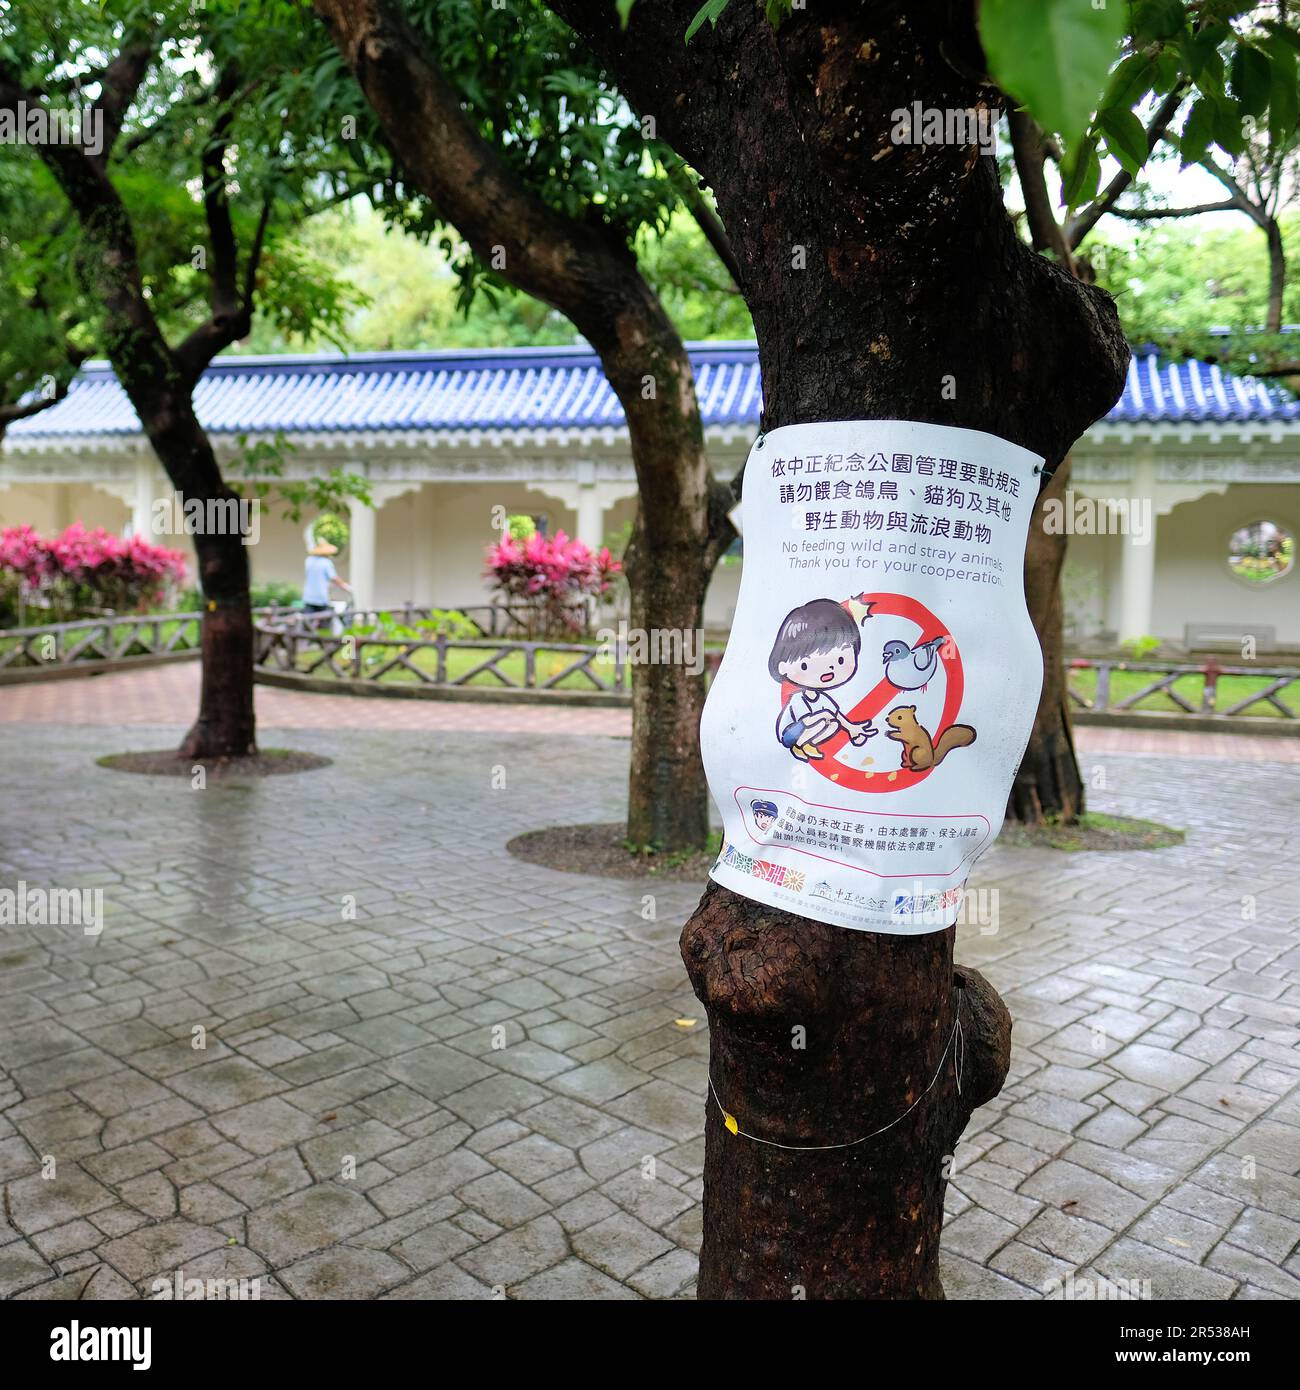 Schild „Keine Fütterung von Wild- und Streuntieren“ in der Chiang Kai-Shek Memorial Hall, Taipei, Taiwan; Parkregeln und -Vorschriften, die die Zusammenarbeit der Besucher verlangen. Stockfoto